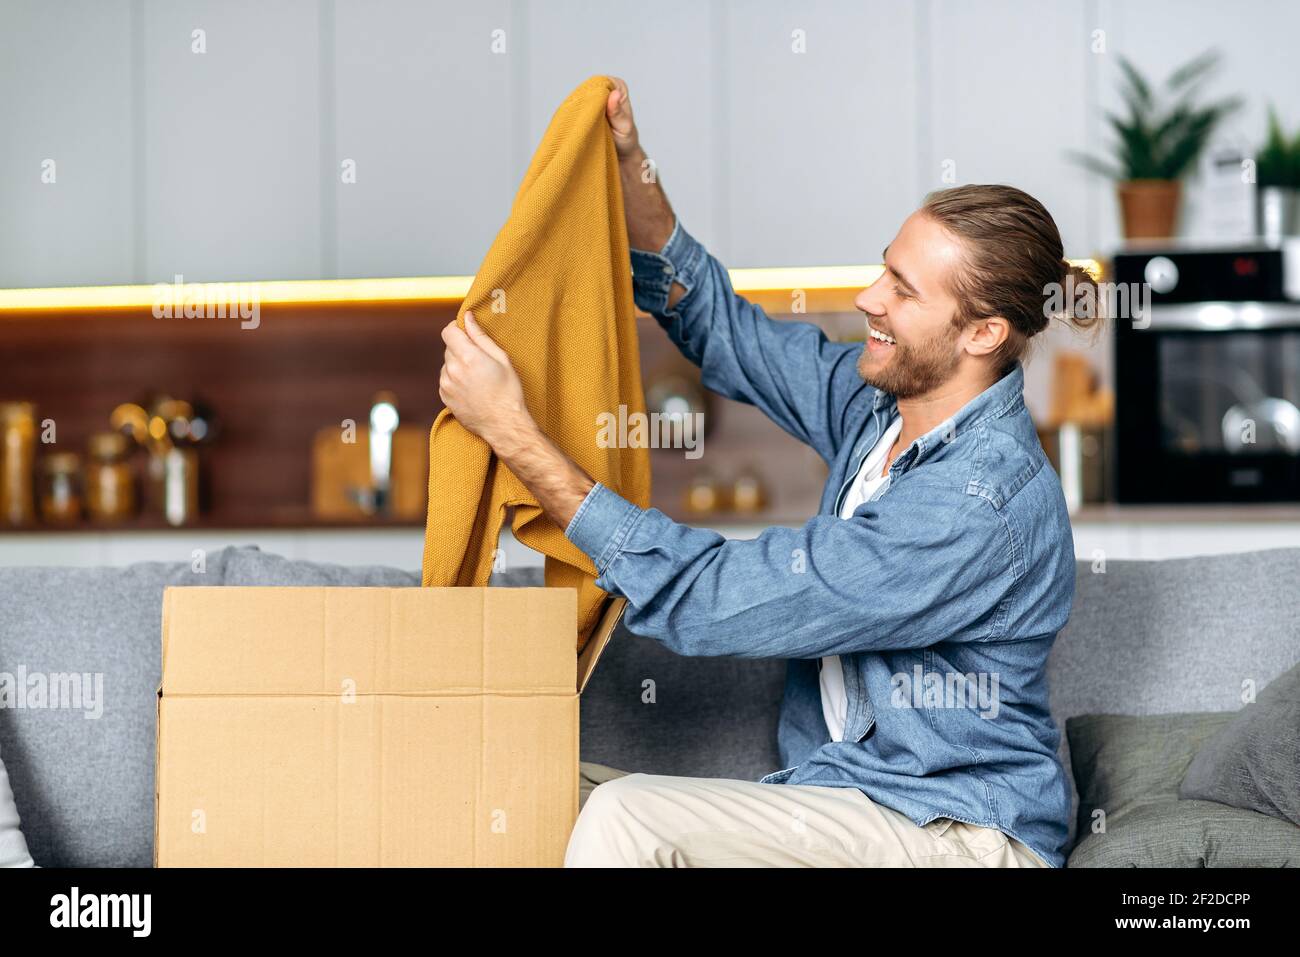 Lächelnder attraktiver Mann packte sein Paket aus und freute sich, eine  lange erwartete Bestellung zu bekommen. Kaukasischen modernen Kerl  Einkaufen in Internet-Shops, Kauf neuer Kleidung online,  Online-Shopping-Konzept Stockfotografie - Alamy